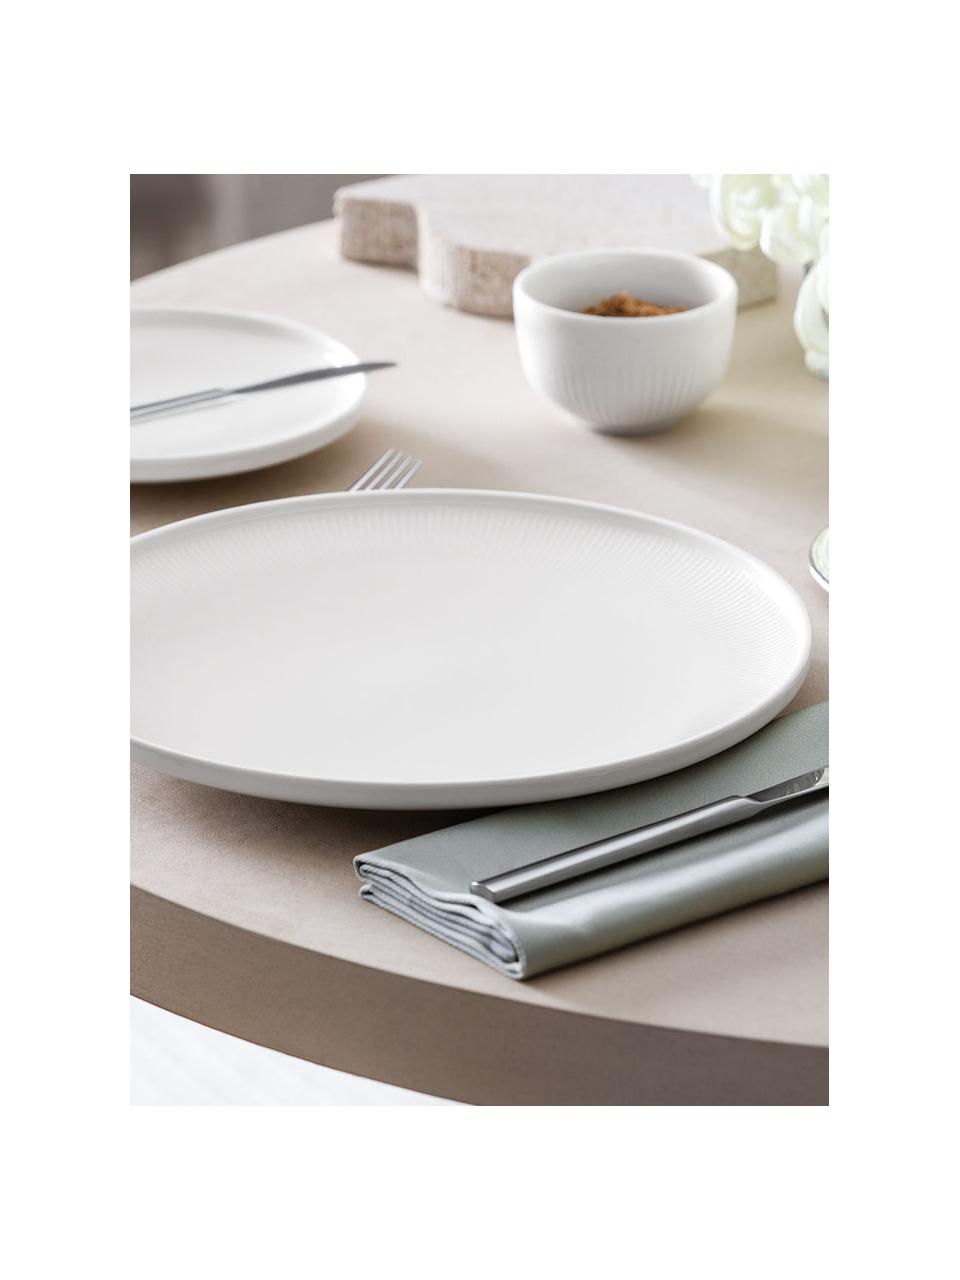 Assiette plate en porcelaine Afina, Porcelaine Premium, Blanc, Ø 27 cm